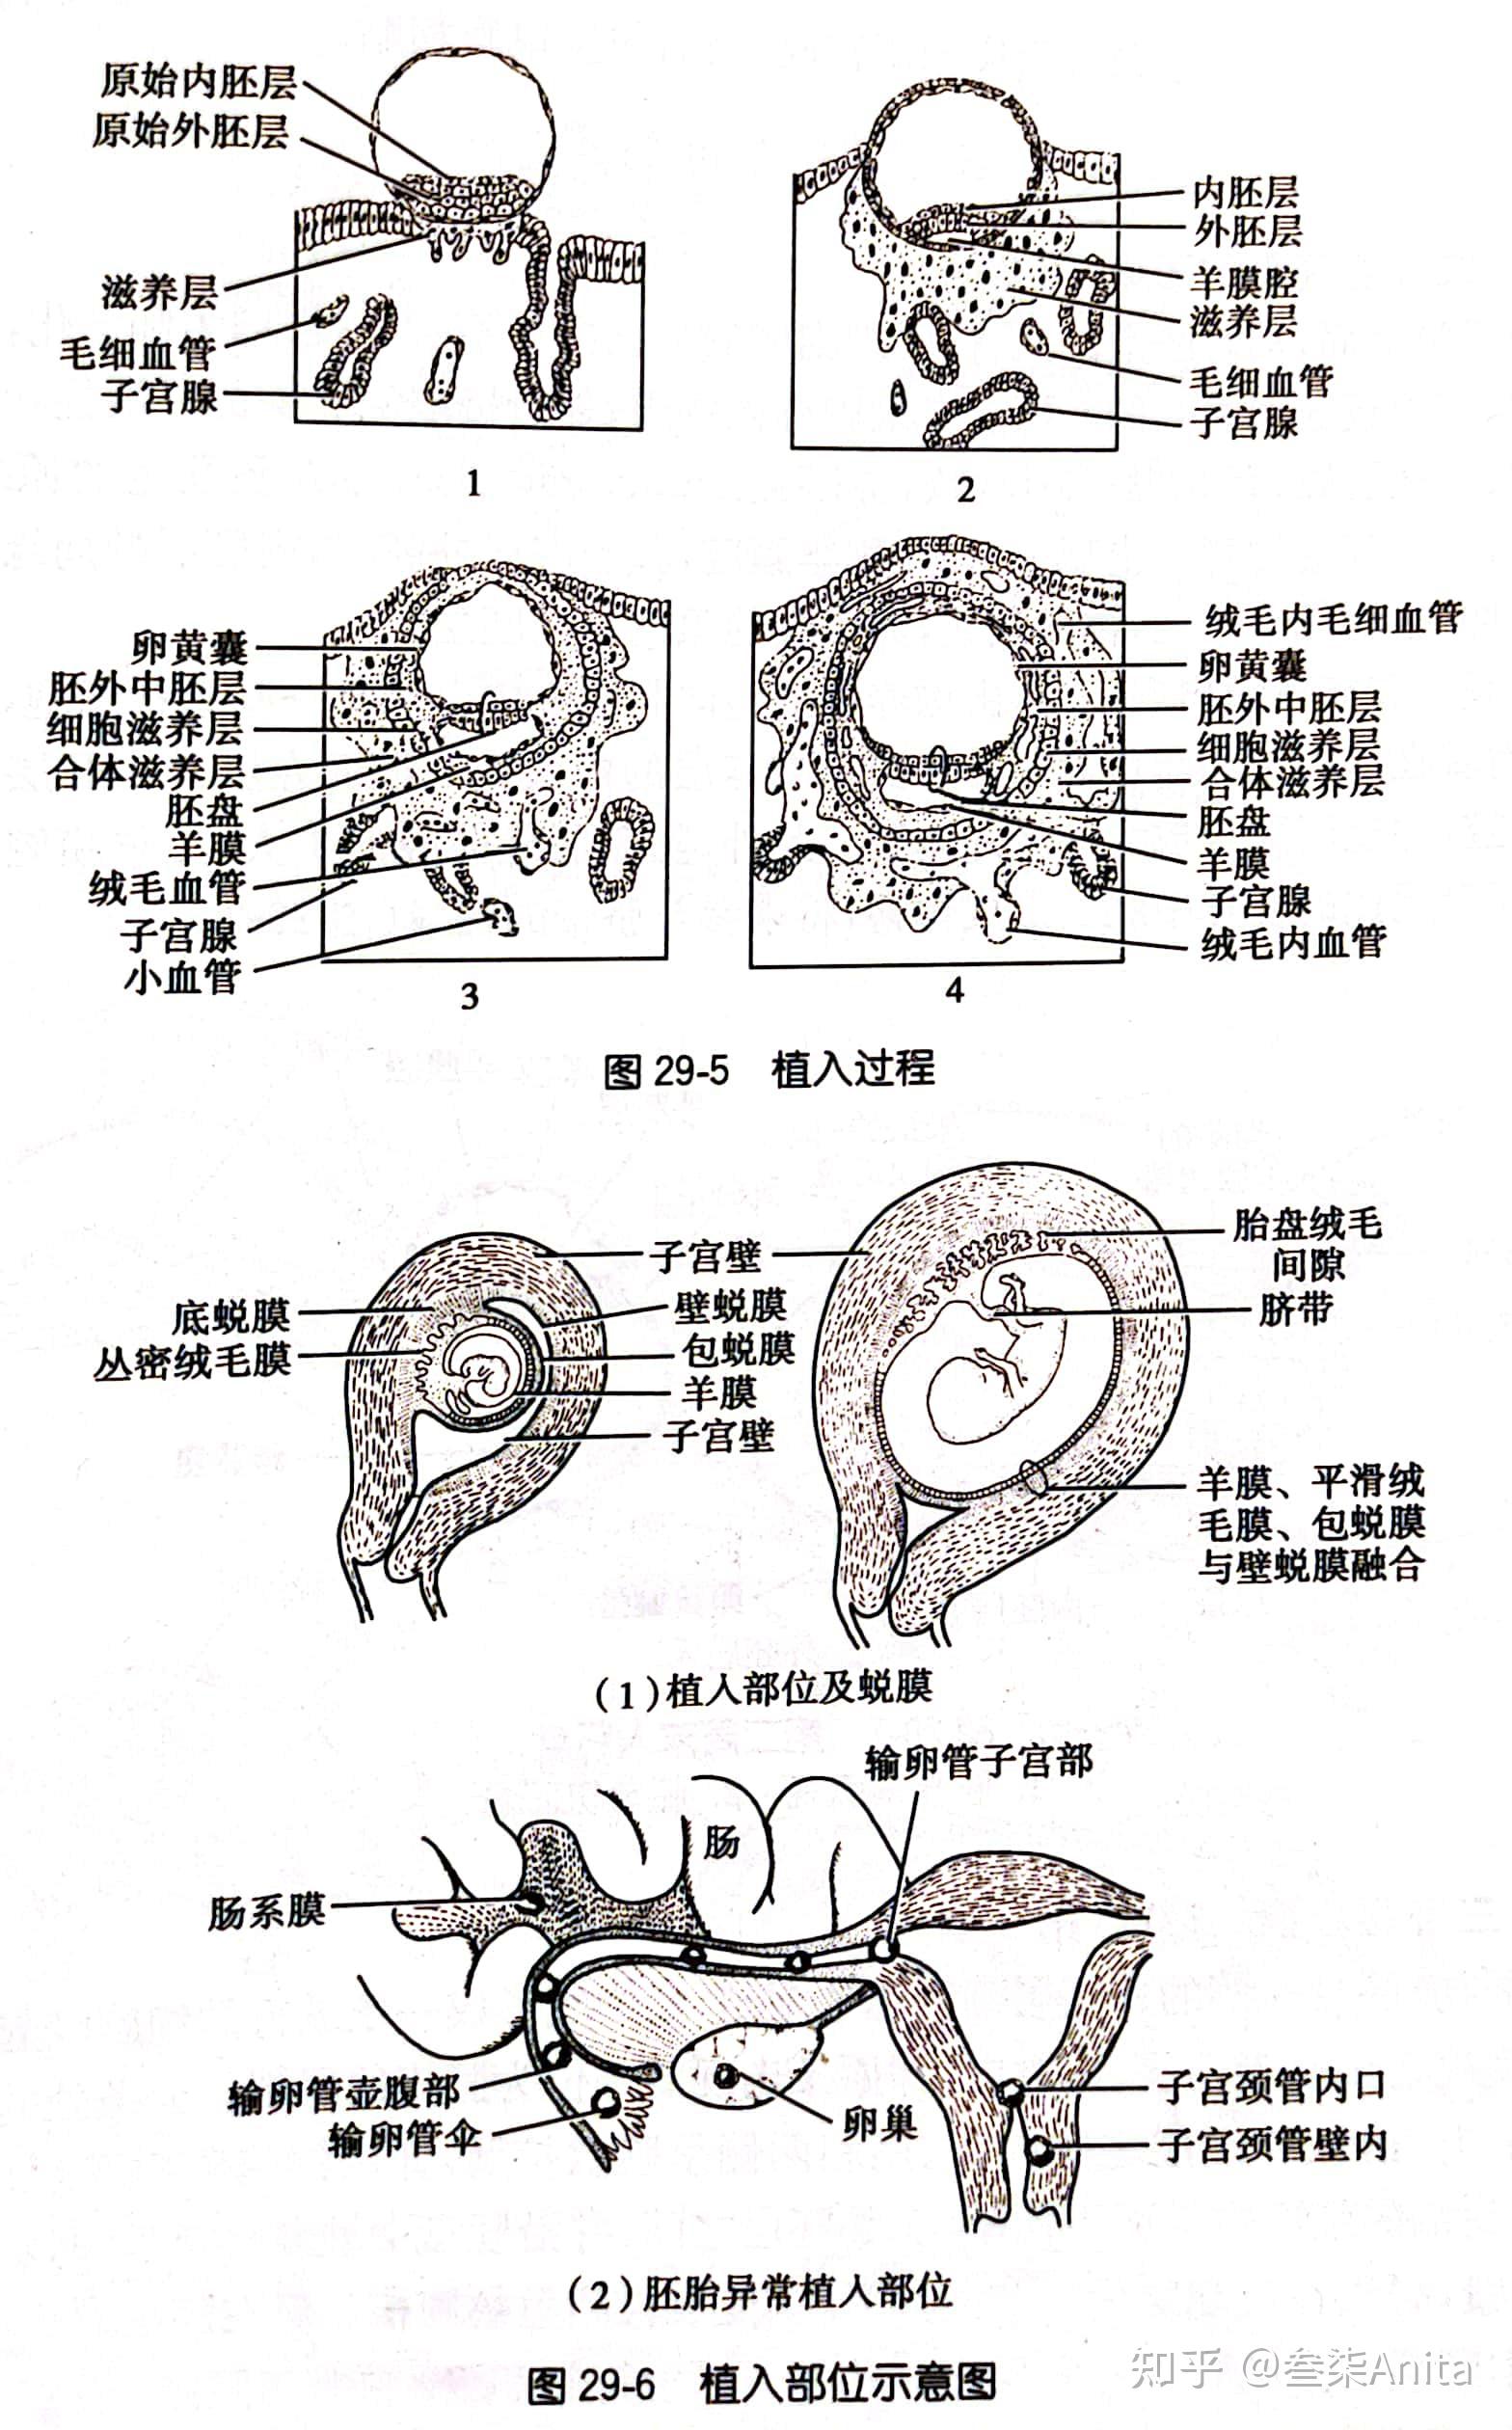 胚囊的植入和羊膜腔的形成abb204—51/2周大的胚胎abb20